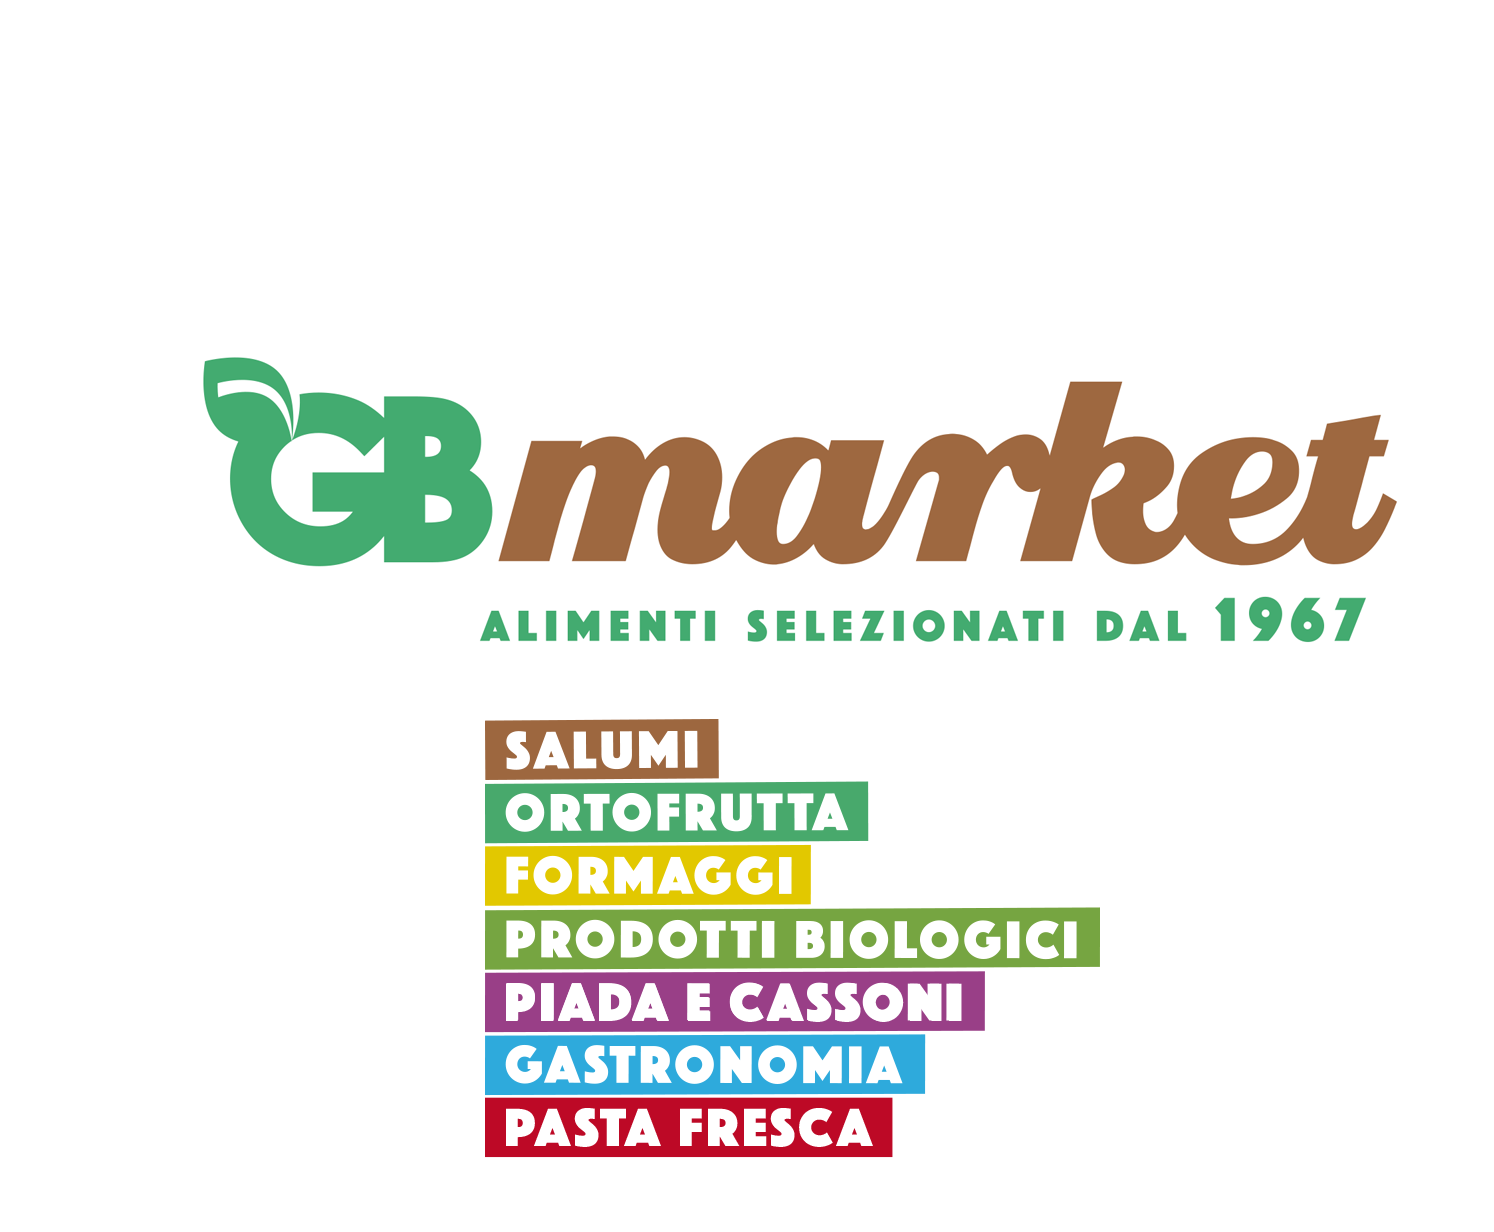 GB Market negozio di alimentari a Rimini